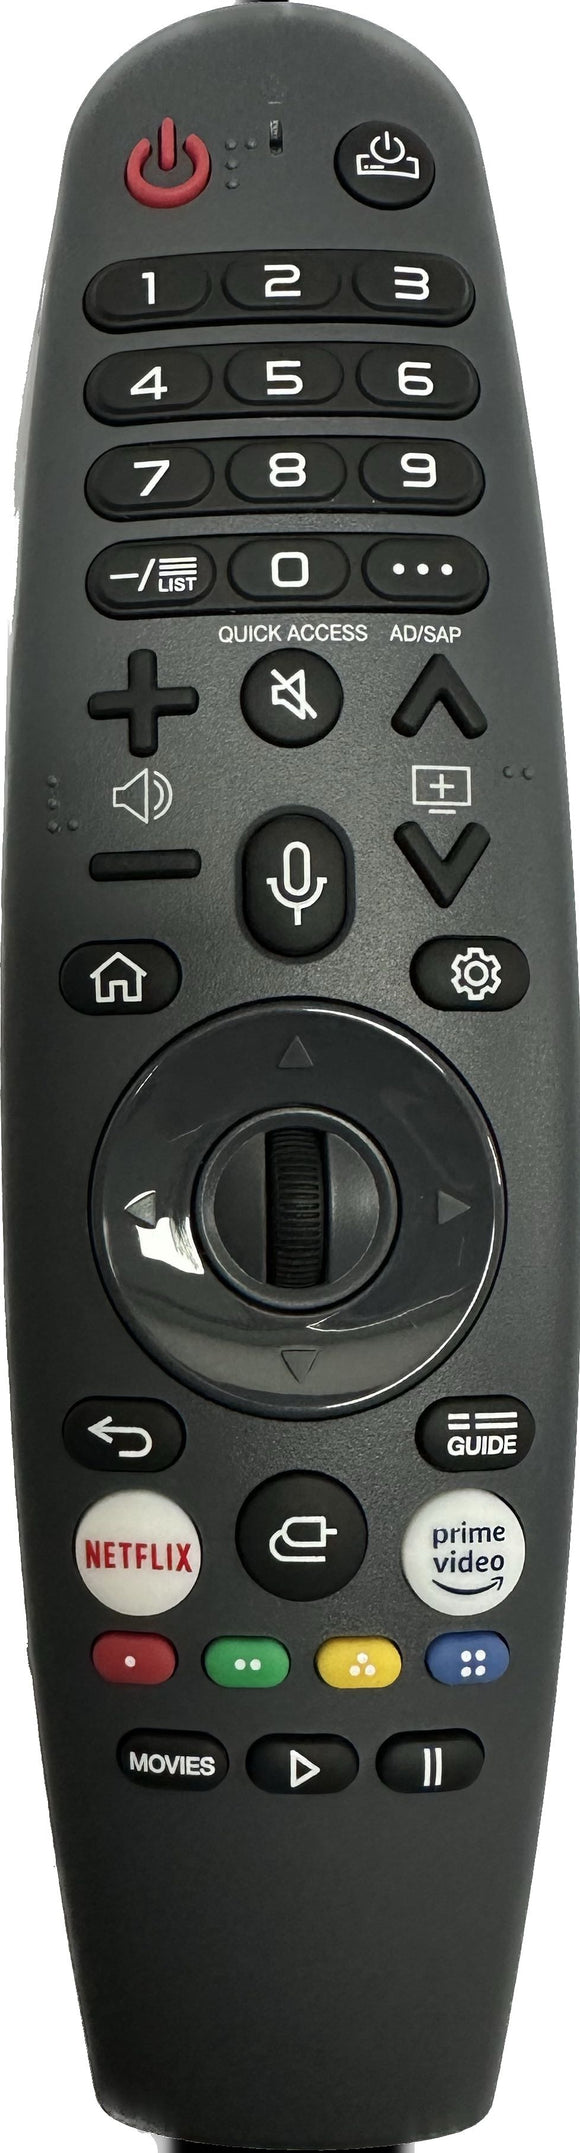 Linsar LS82UHDNF2 Smart TV Remote Control